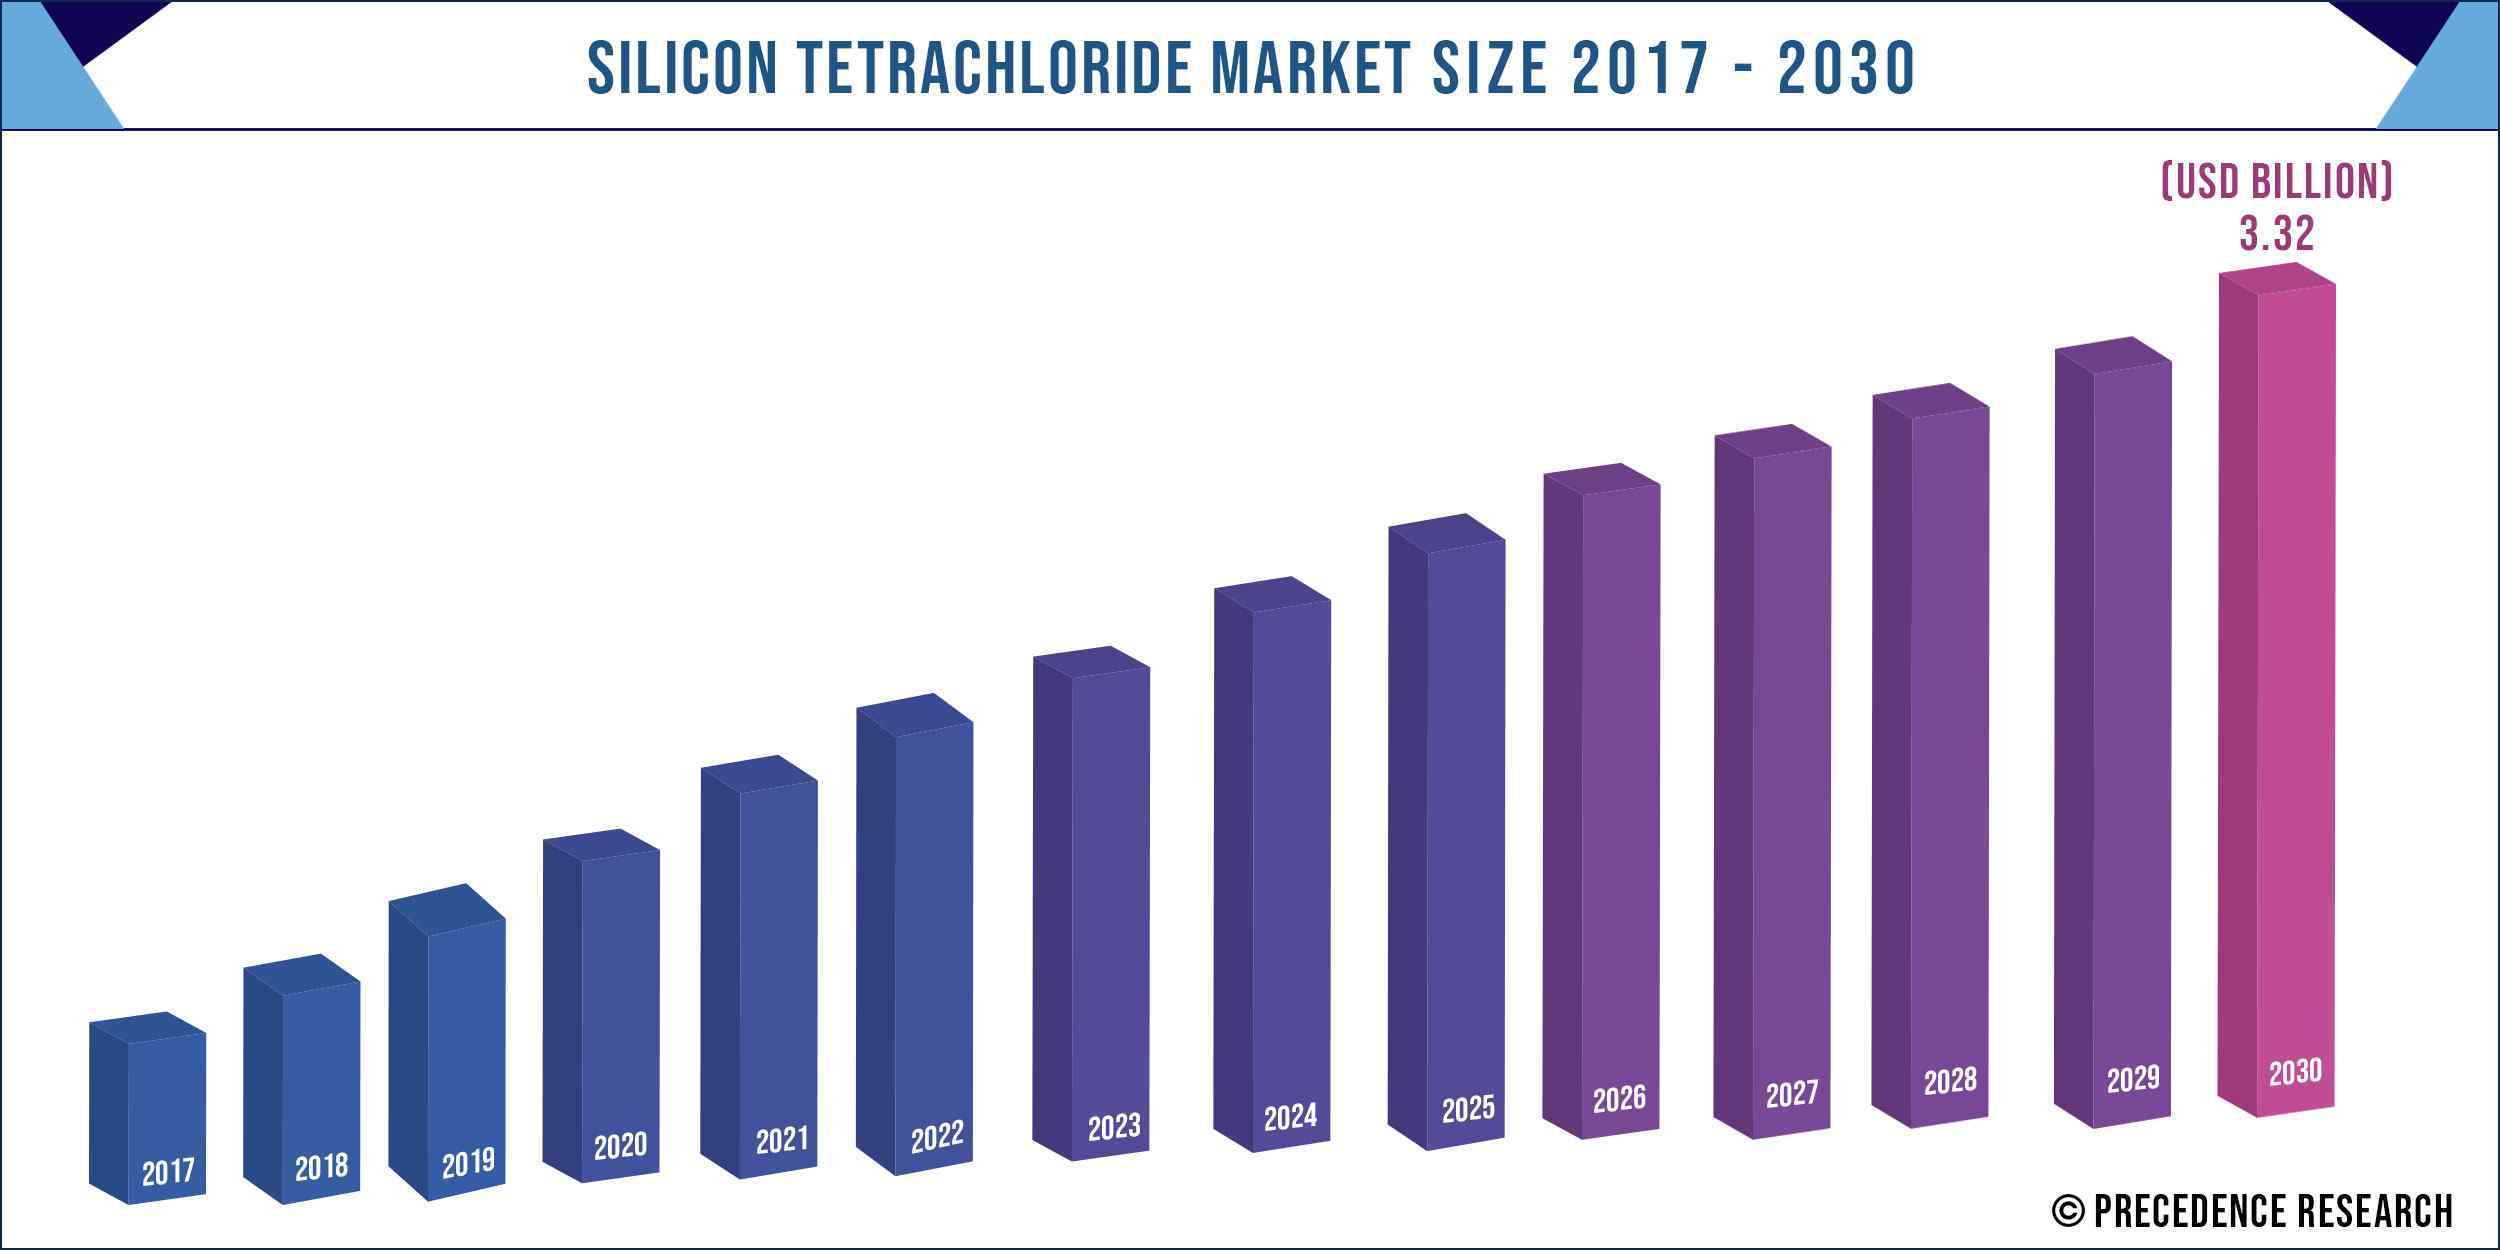 Silicon Tetrachloride Market Size 2017-2030